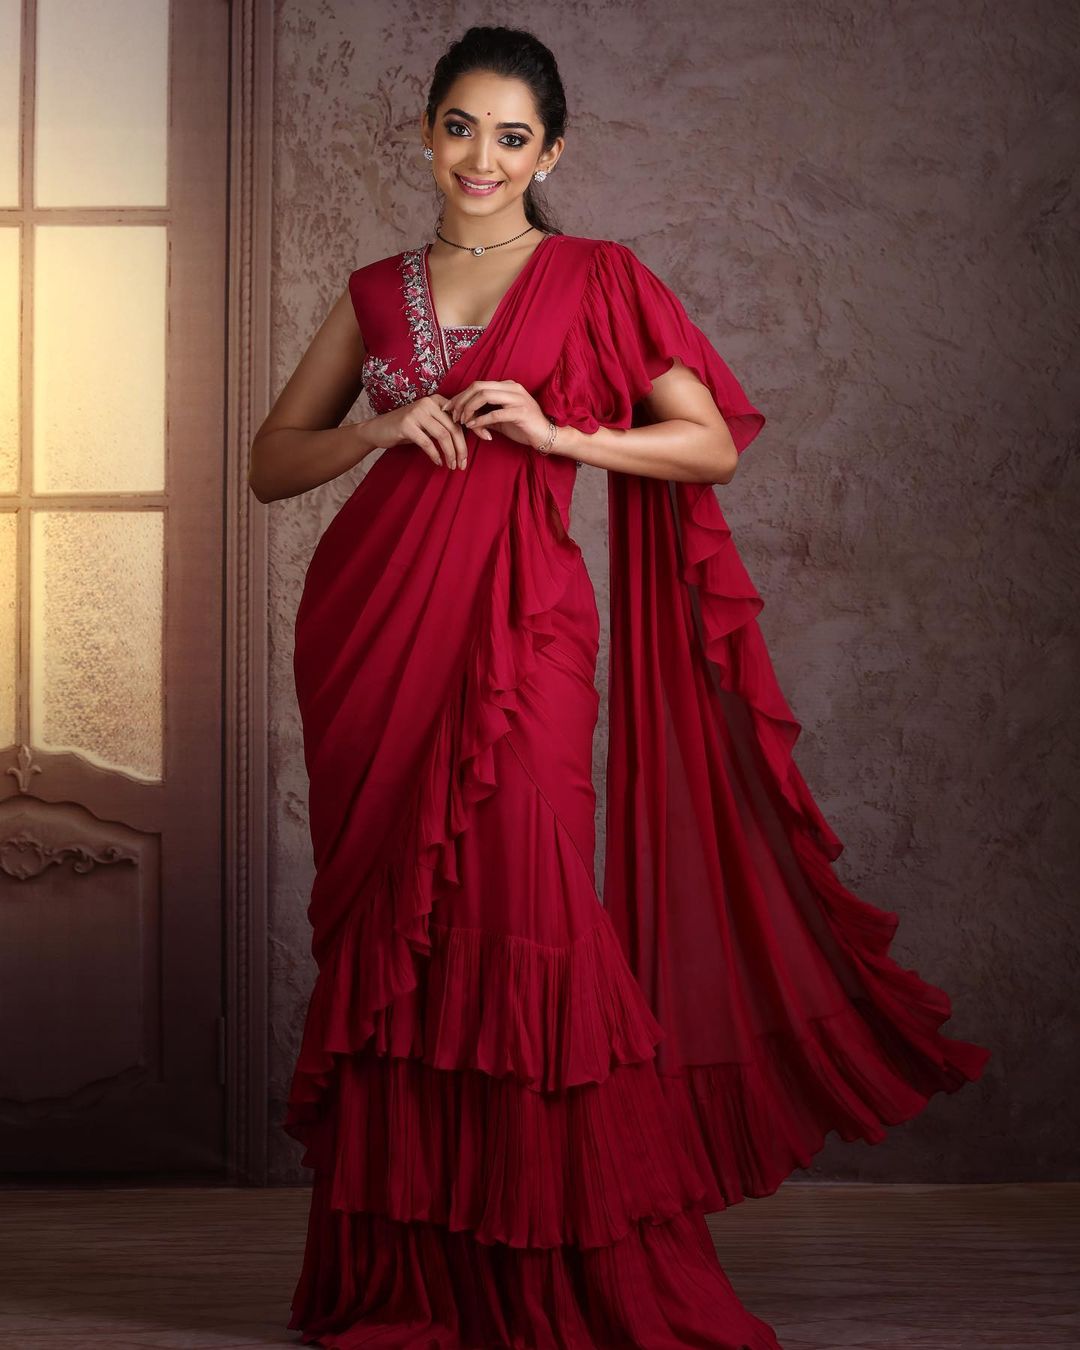 Saanve Megghana Simple And Elegant Look In Red Ruffle Saree